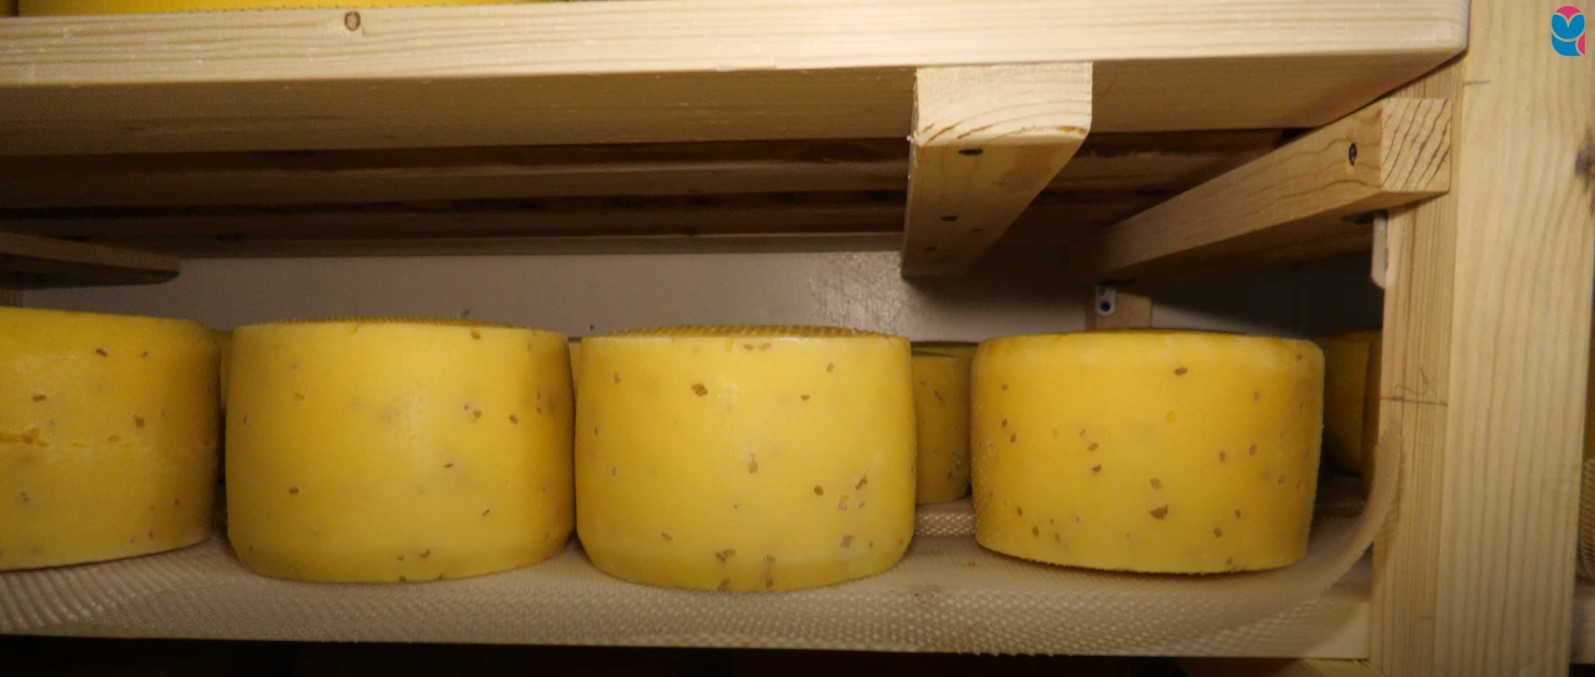 Супруги из Безенчукского района развивают ферму и производство сыра благодаря господдержке